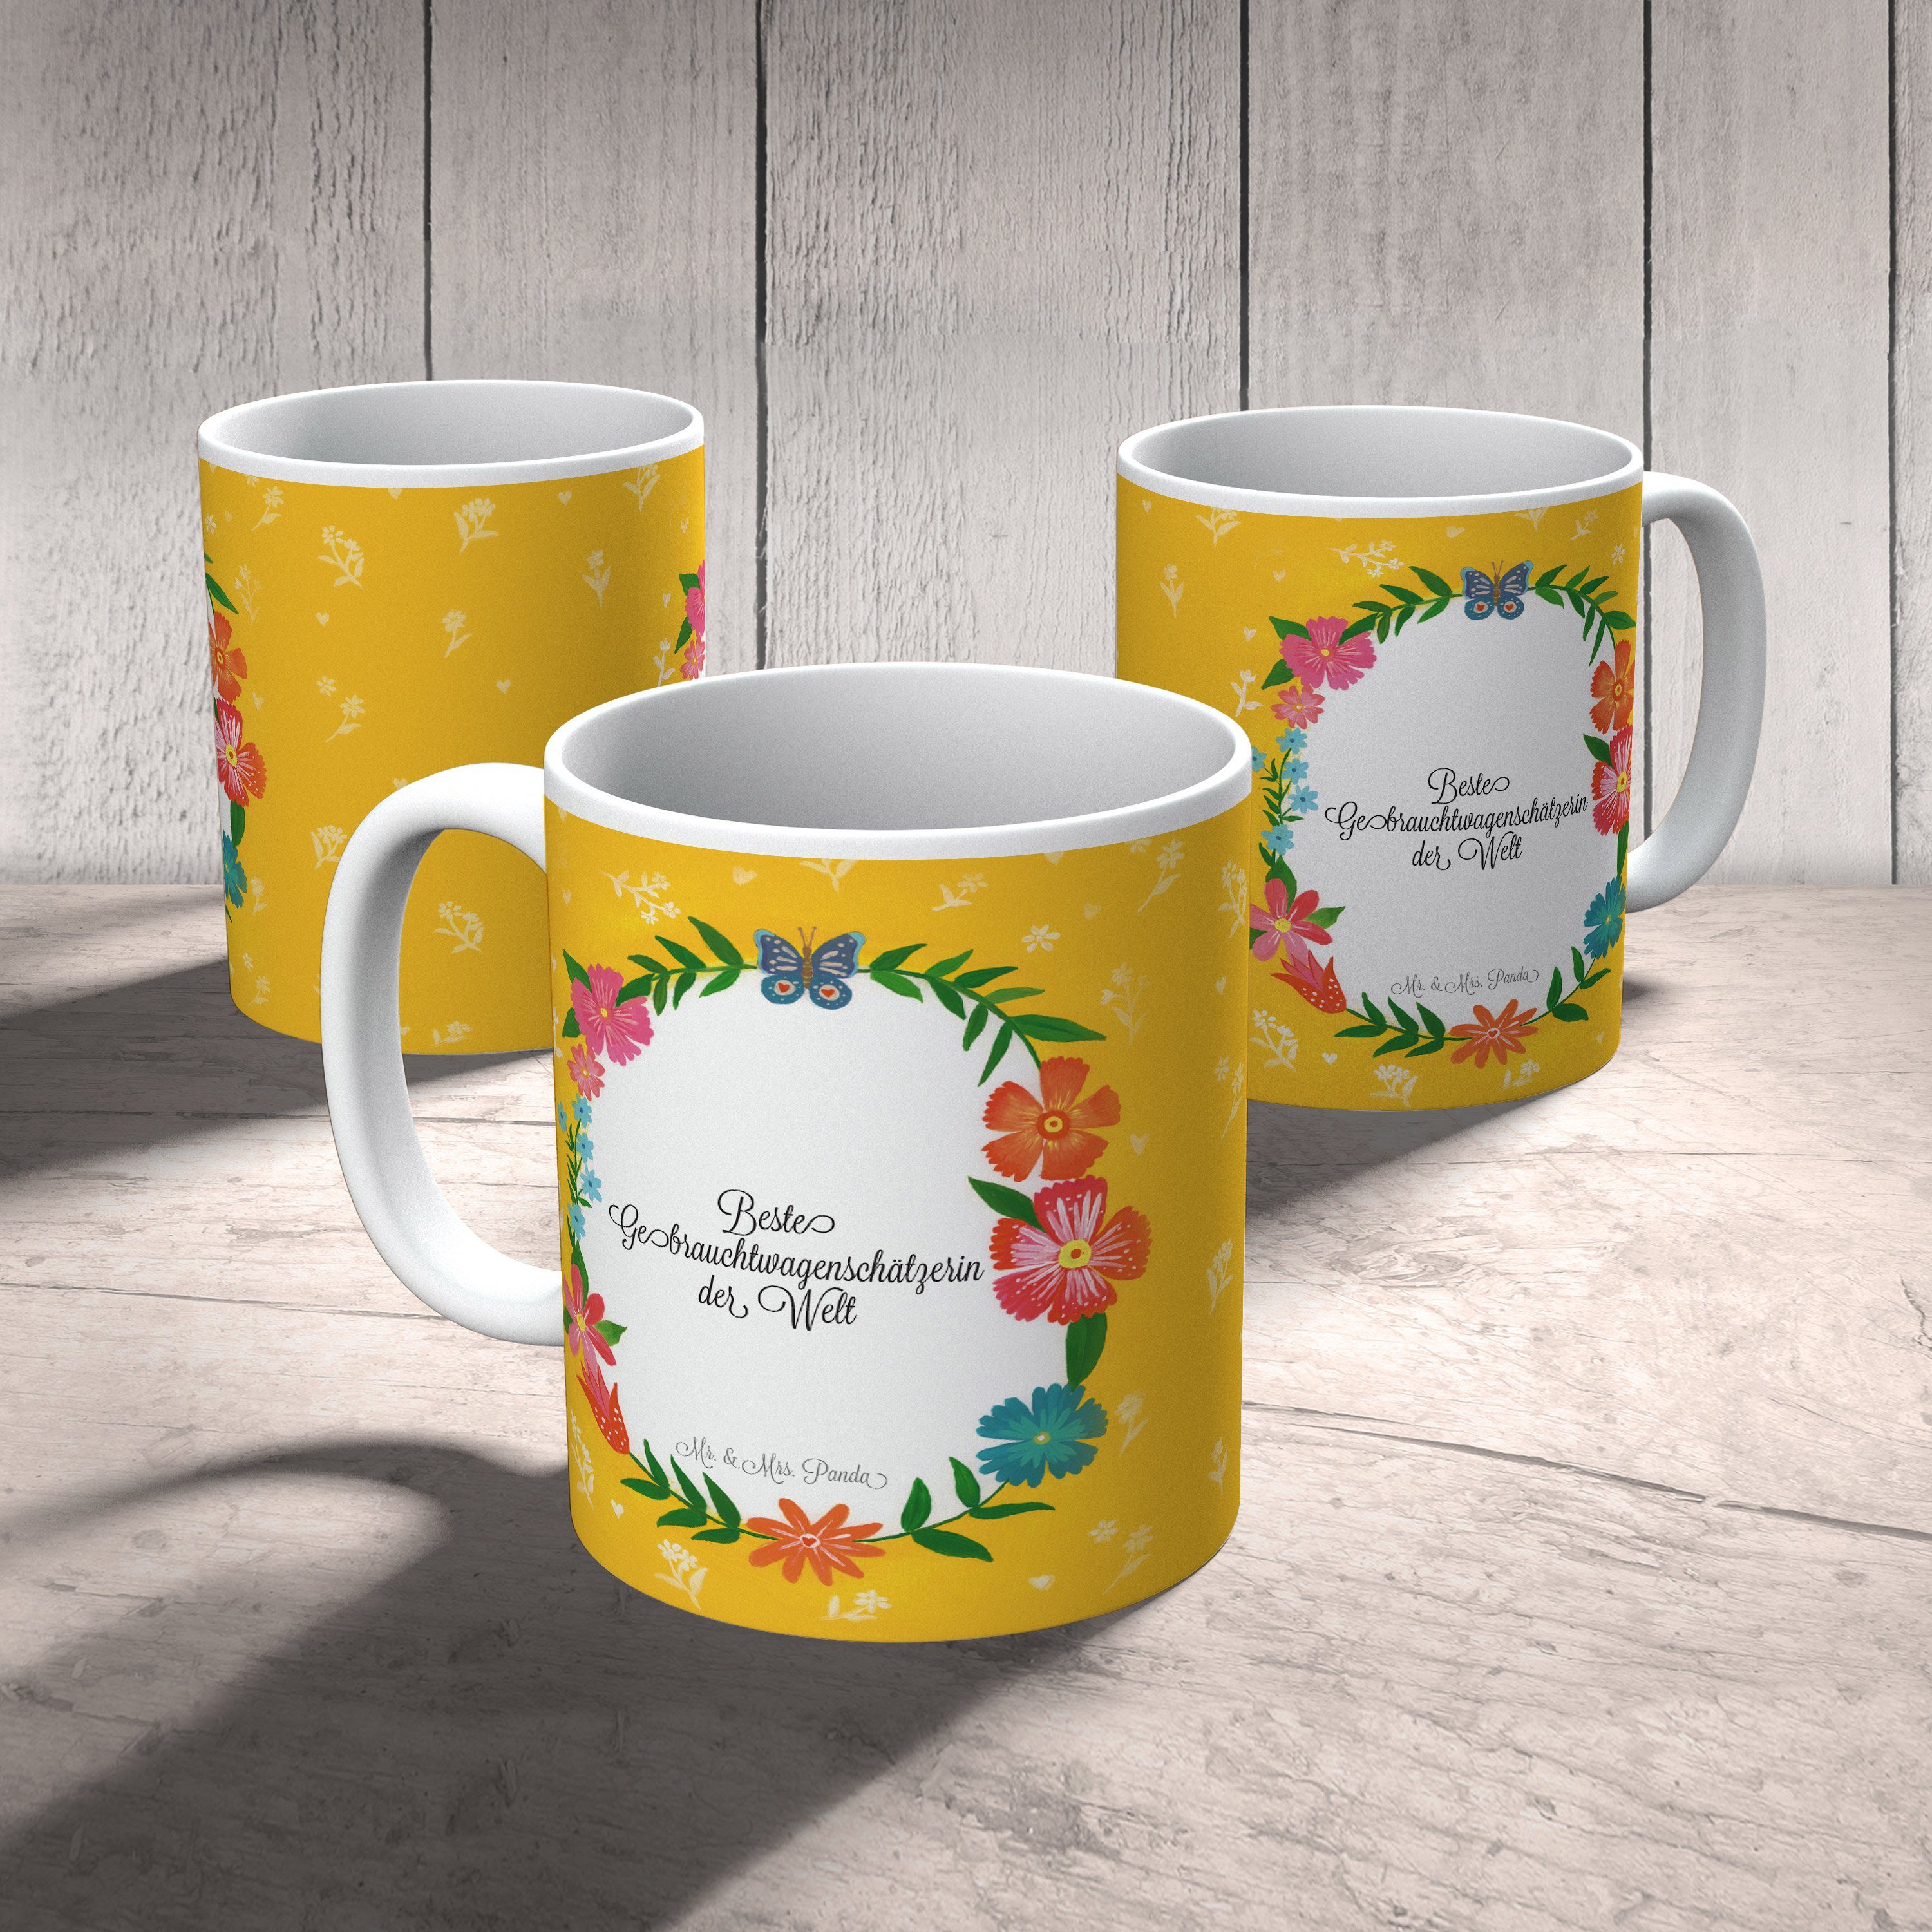 Mr. & Mrs. Panda Tasse, Geschenk, Tasse, Geschenk - Gebrauchtwagenschätzerin Tasse Abschluss, Keramik